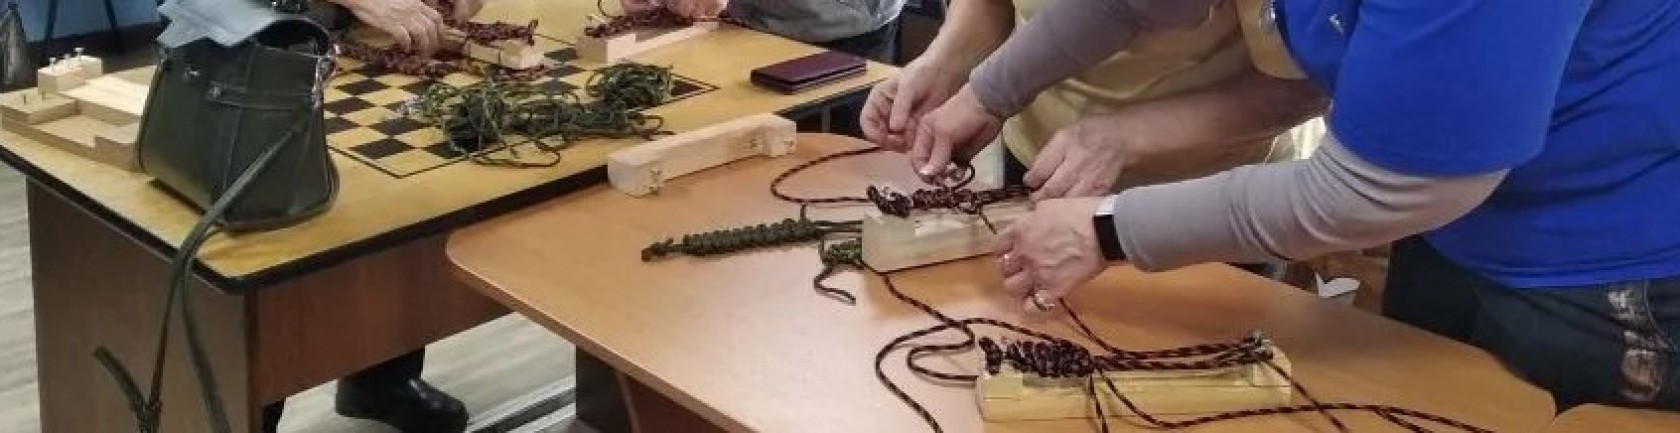 Мастер-класс по плетению браслетов выживания провели общественницы накануне Дня Победы